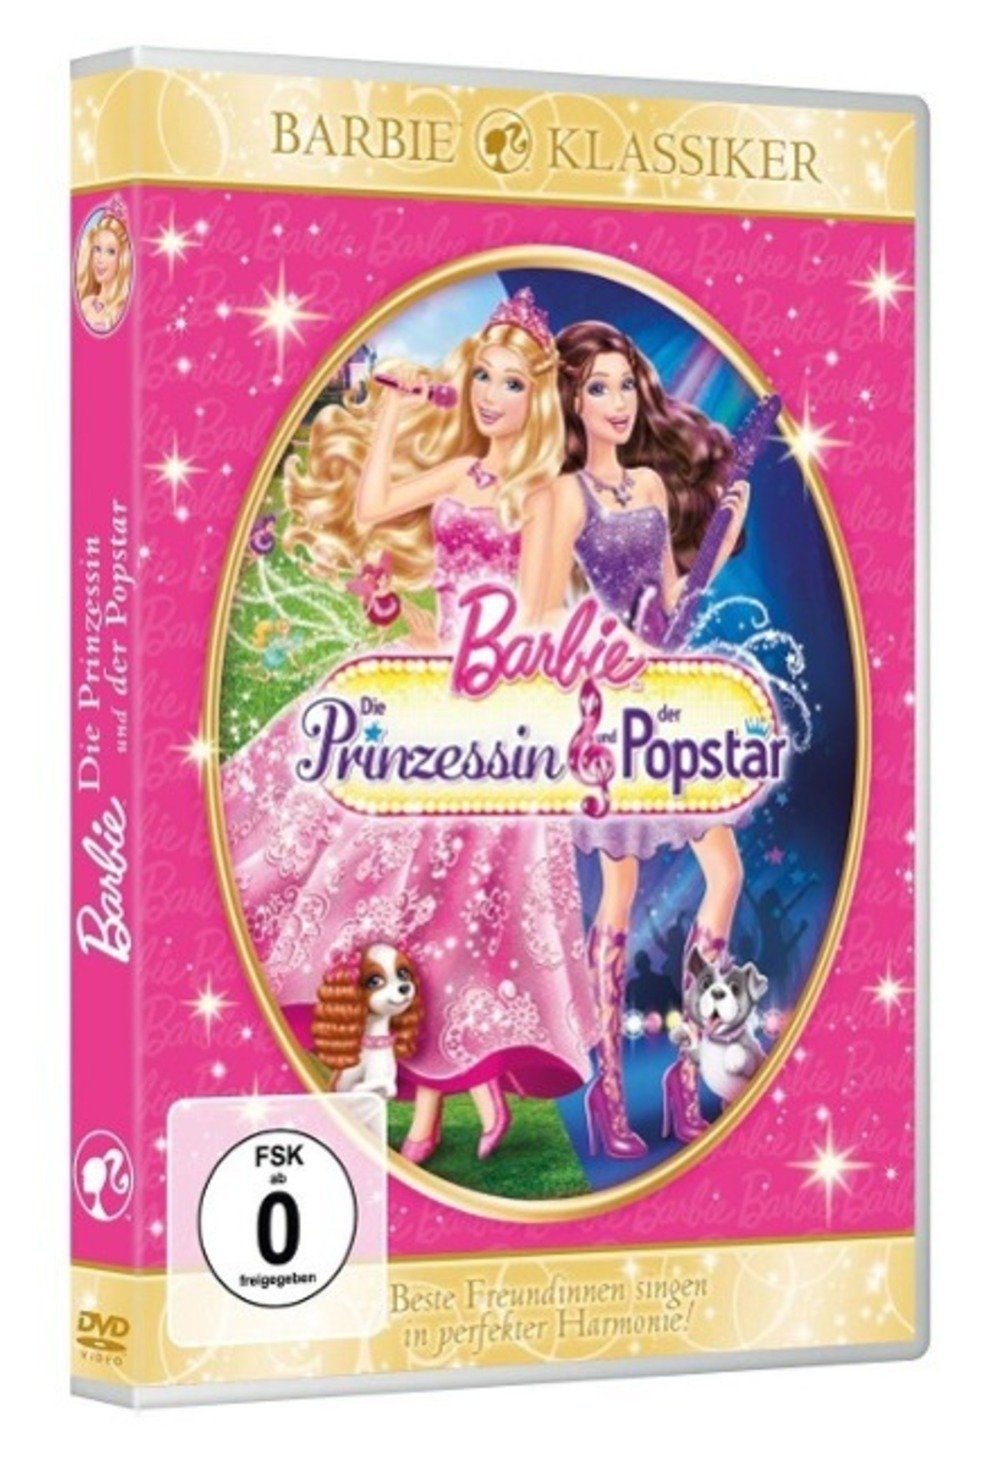 Universal Pictures DVD Barbie - Die Prinzessin und der Popstar